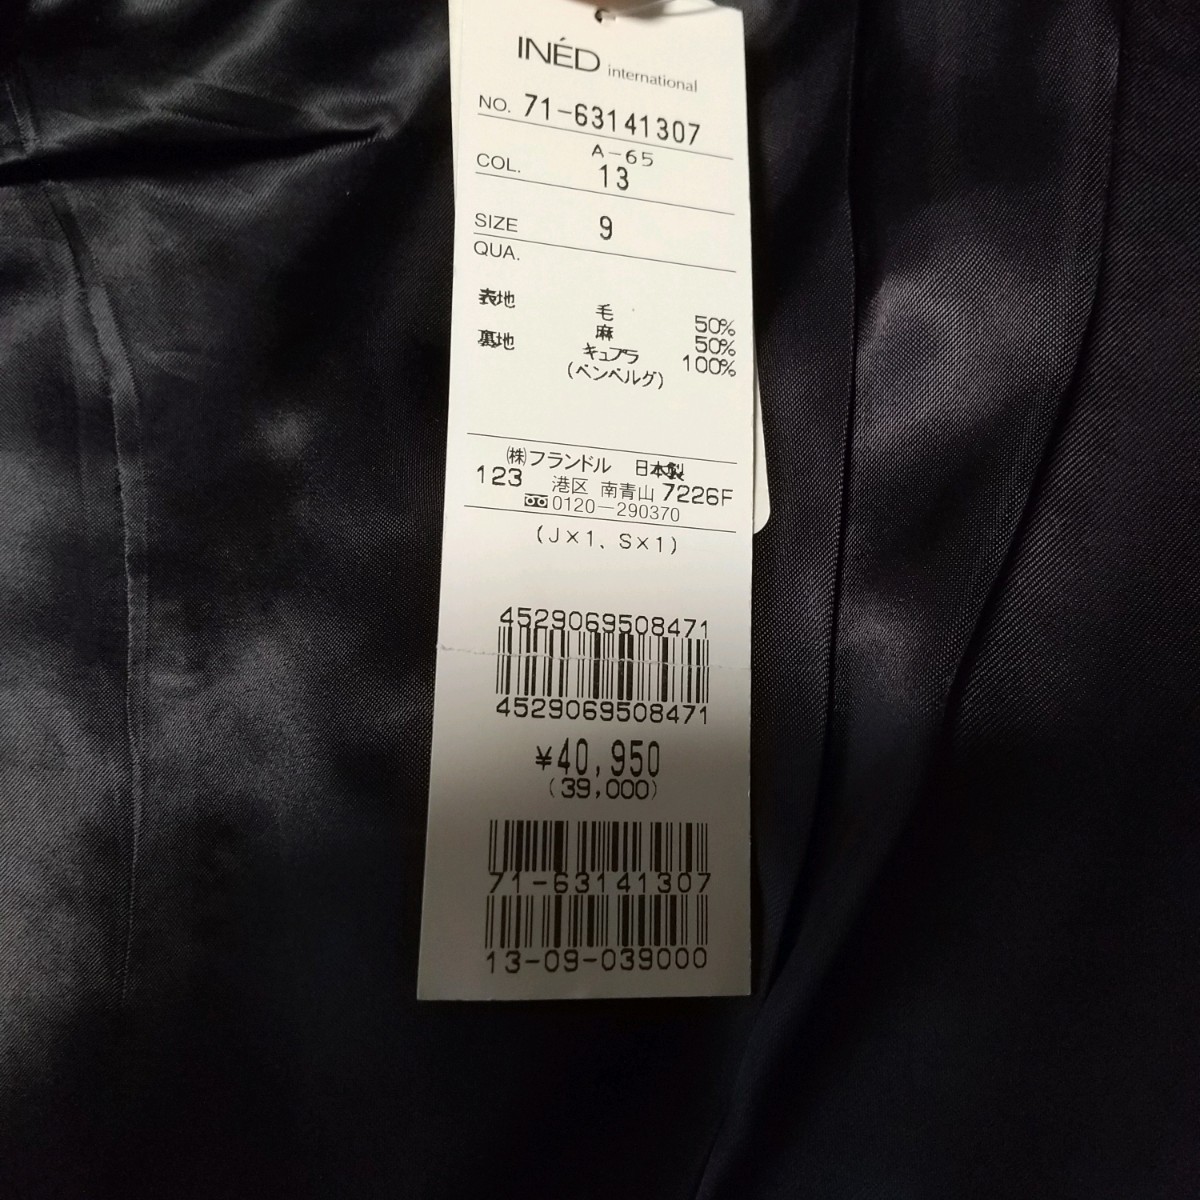 [ бесплатная доставка ] не использовался *INED Ined 9 номер шерсть tailored jacket linen женский серый с биркой обычная цена 4 десять тысяч сделано в Японии формальный осень-зима 